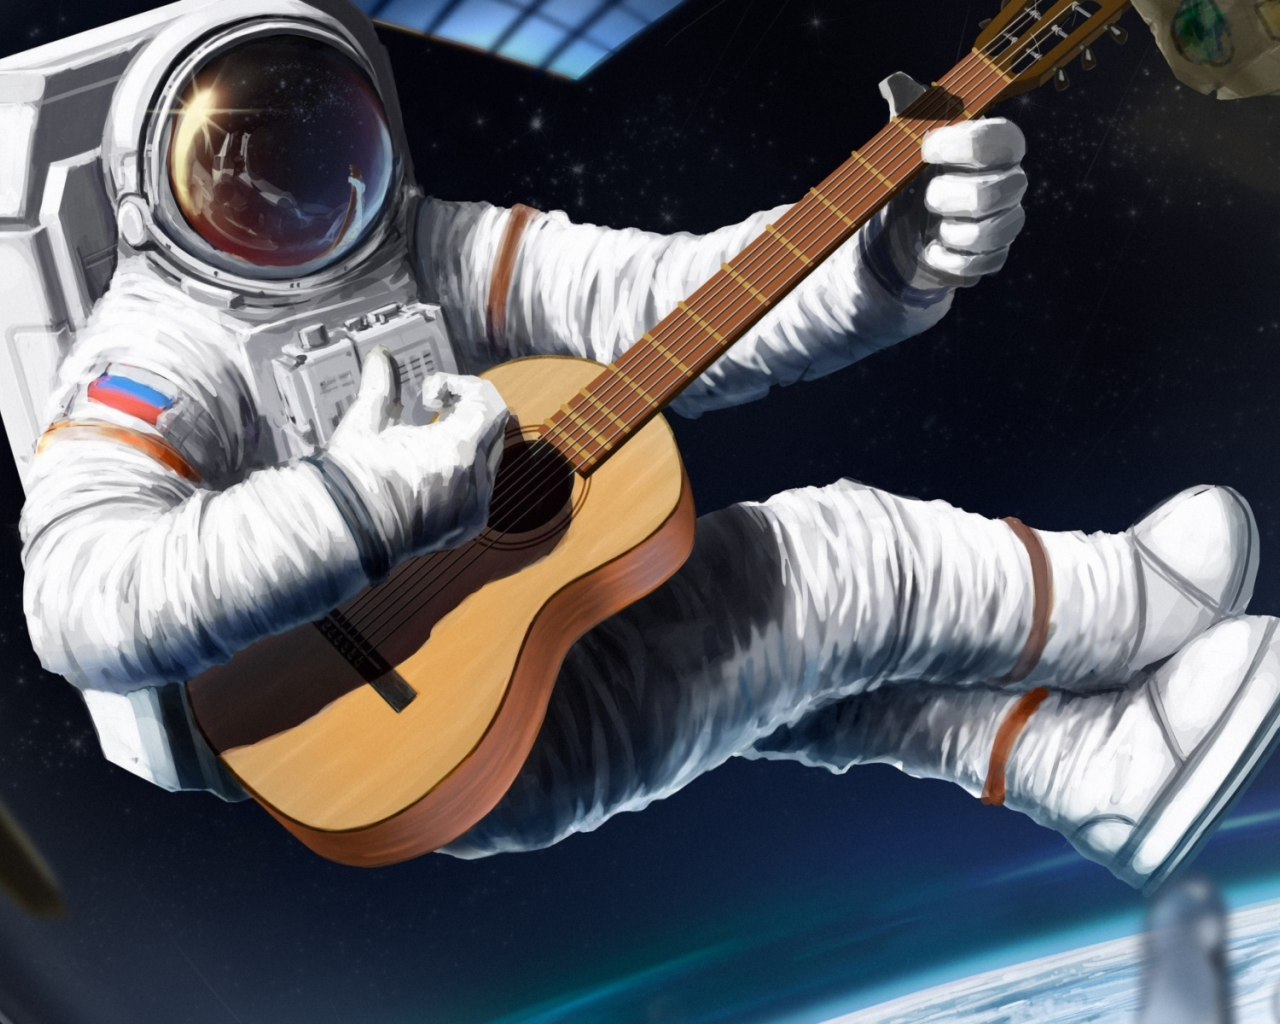 космос, космонавт, играет на гитаре